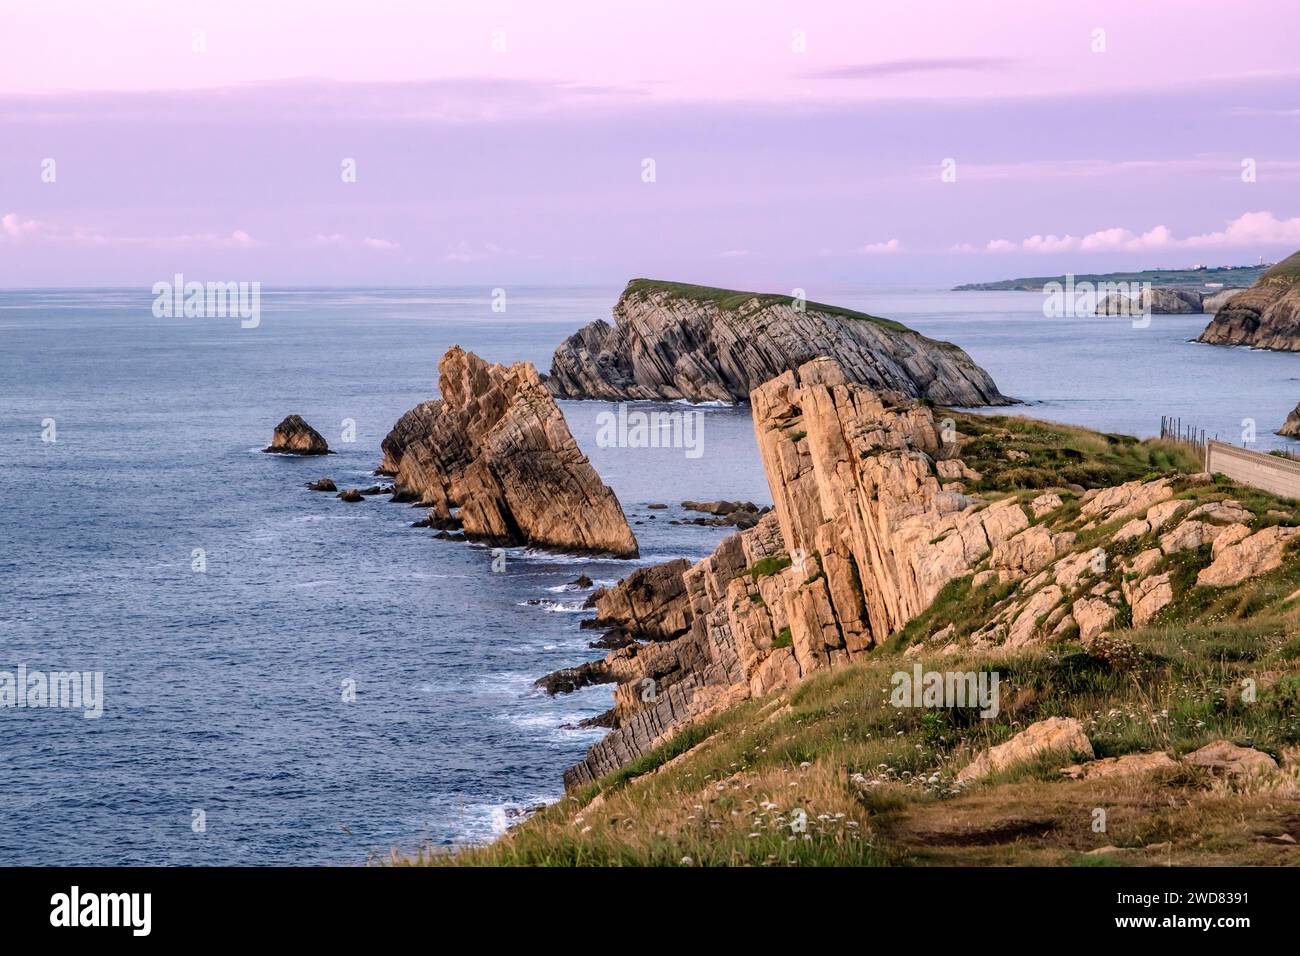 Beau paysage côtier au coucher du soleil le long de la côte brisée de Liencres, Cantabrie, Espagne Banque D'Images